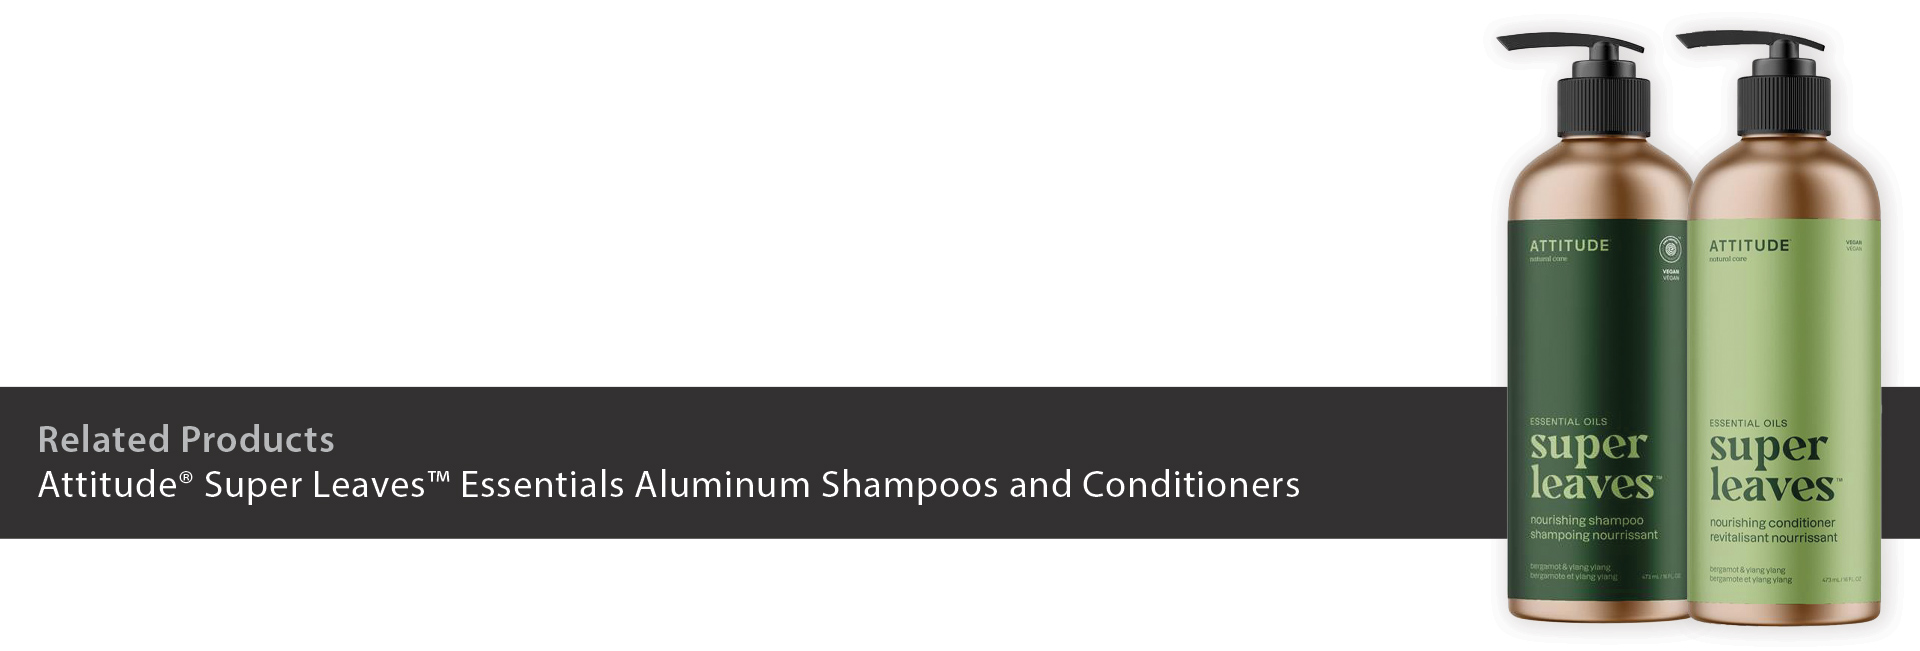 Attitude Super Leaves Essentials Aluminum Shampoos and Conditioners